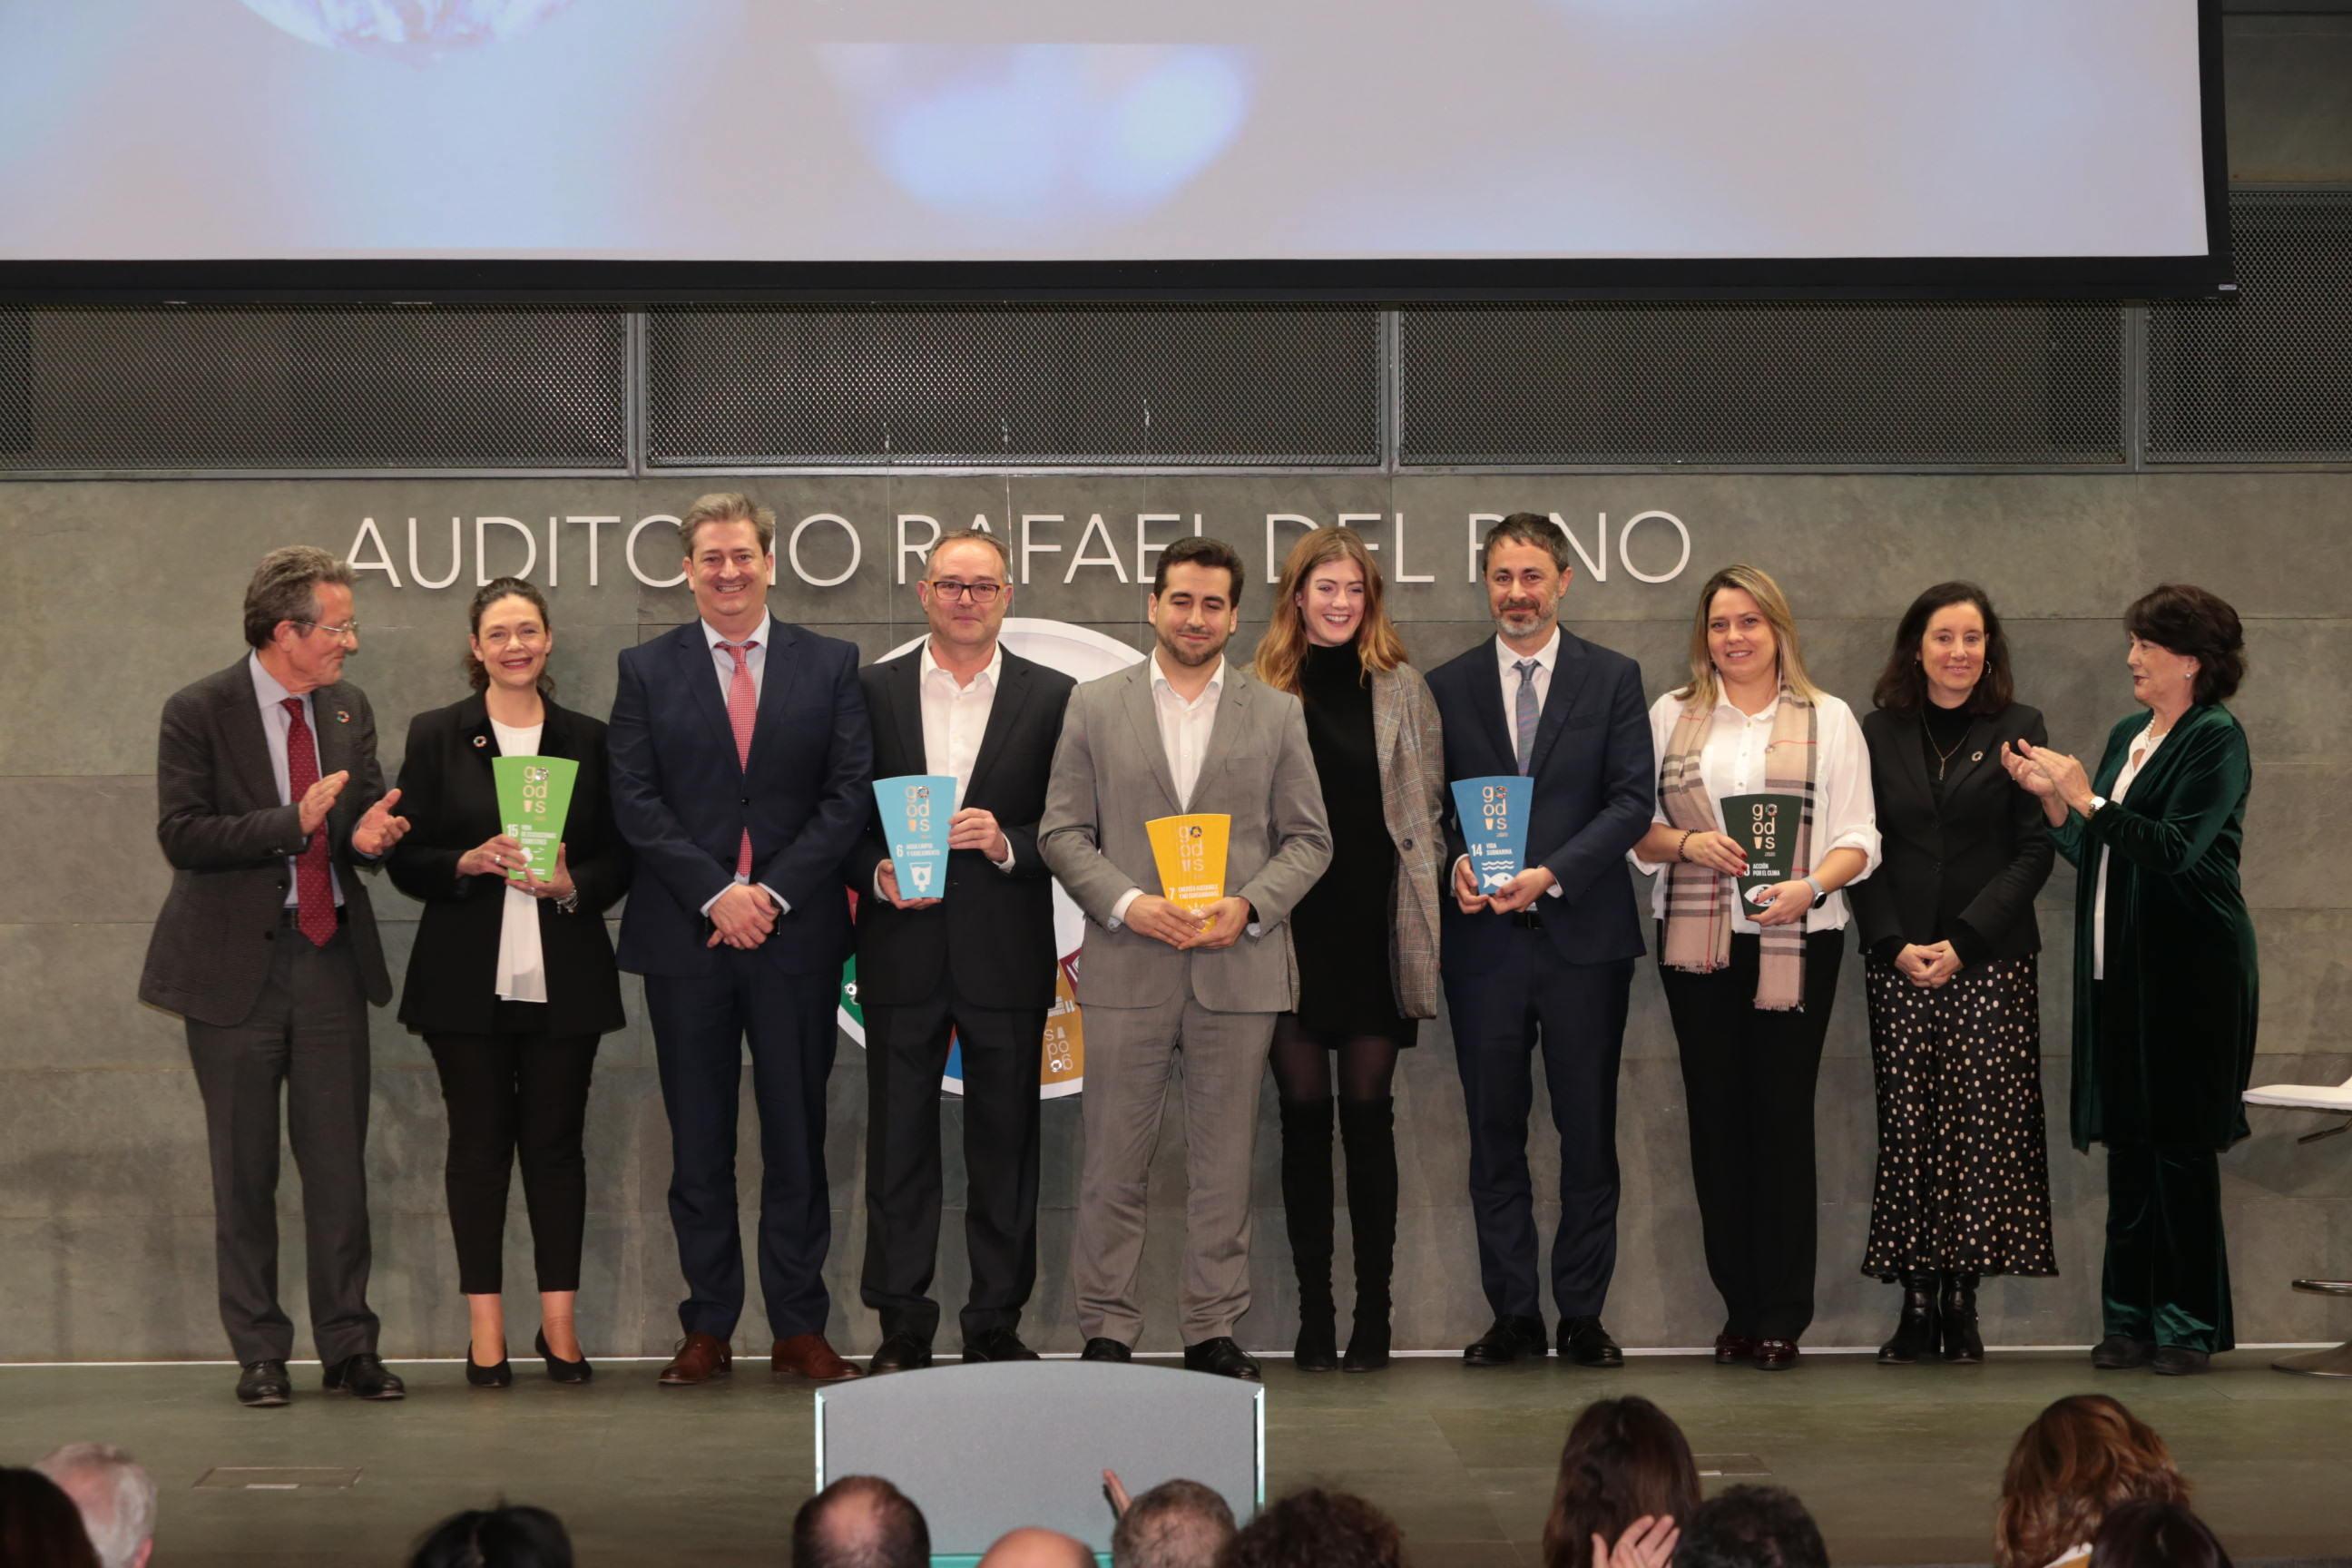 Imagen de los premiados por la Red Española del Pacto Mundial y la Fundación Rafael del Pino, por su contribución a la consecución de los Objetivos de Desarrollo Sostenible (ODS) de las Naciones Unidas y los objetivos de la Agenda 2030